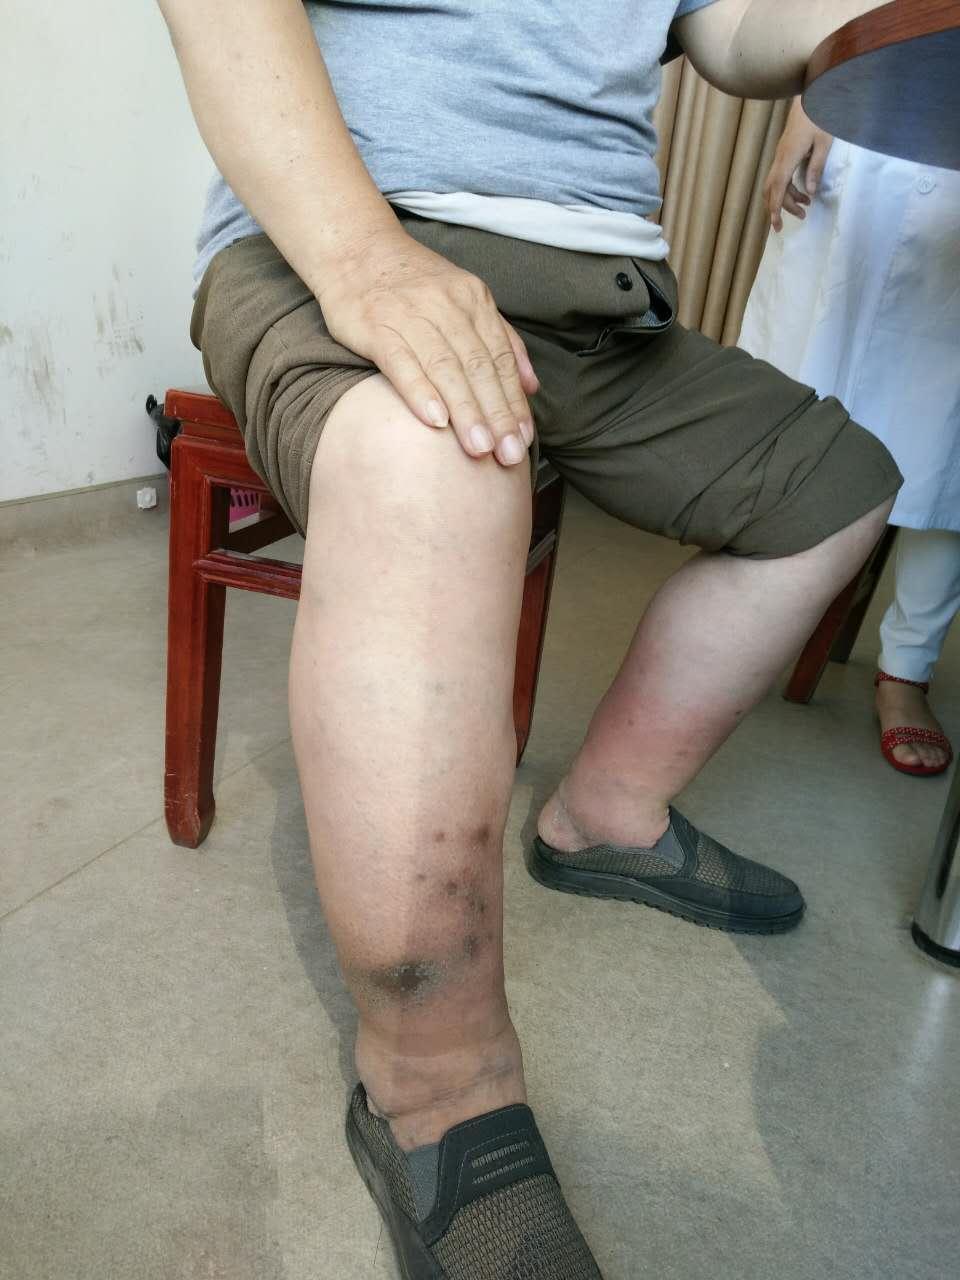 74岁老人照顾瘫痪老伴十余年,肿成大象腿却没空住院